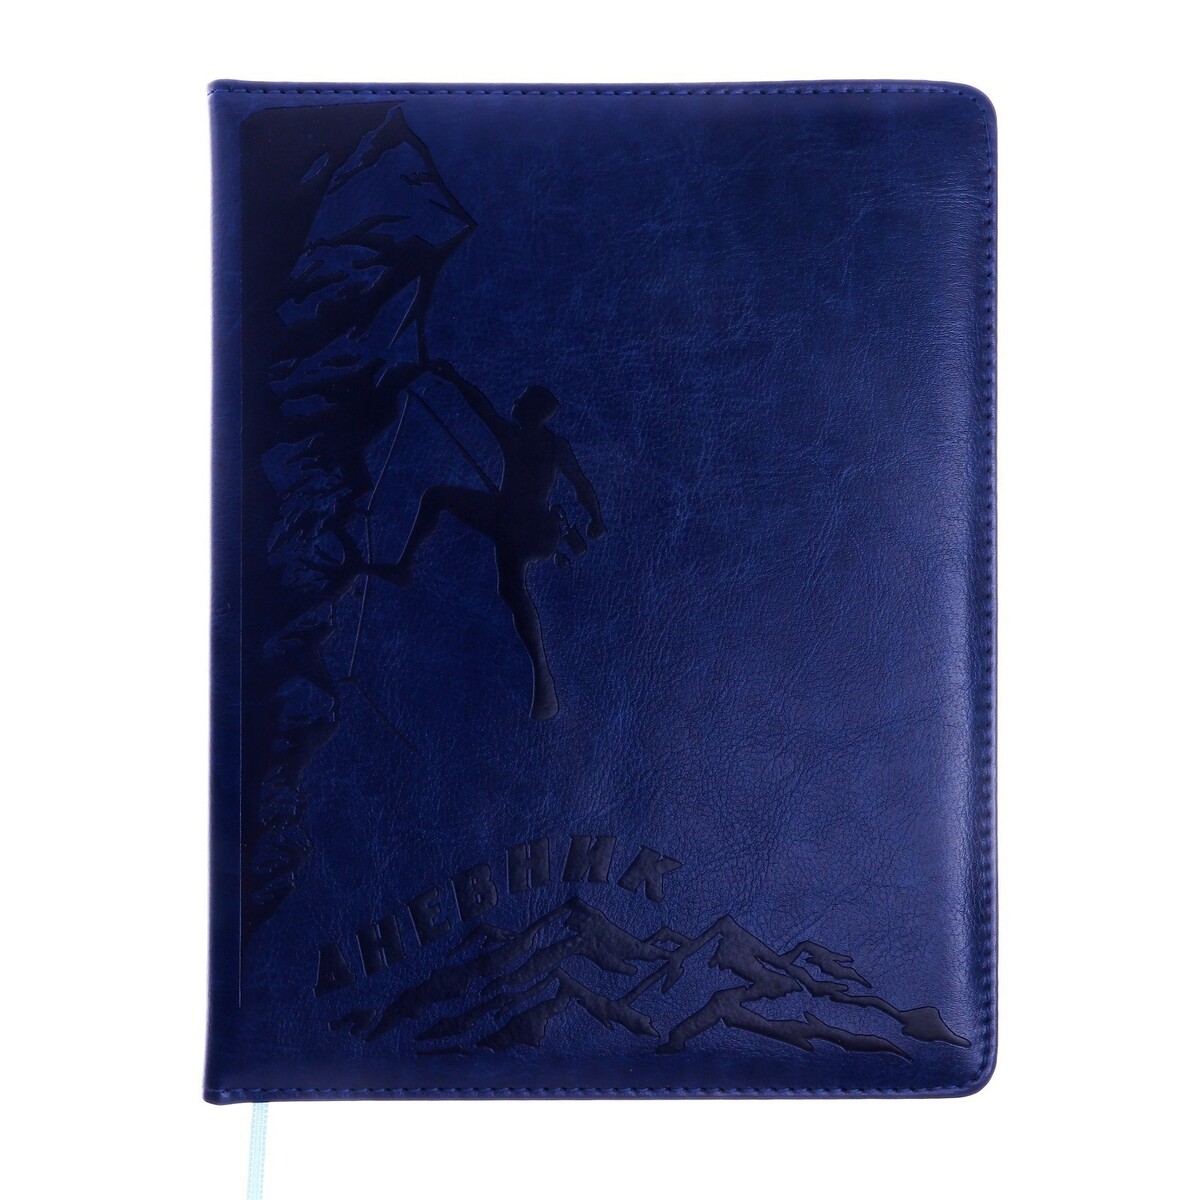 Дневник школьный, 5-11 класс, обложка пвх, скалолаз, синий дневник шк original style синий искусств кожа термотиснение резинка